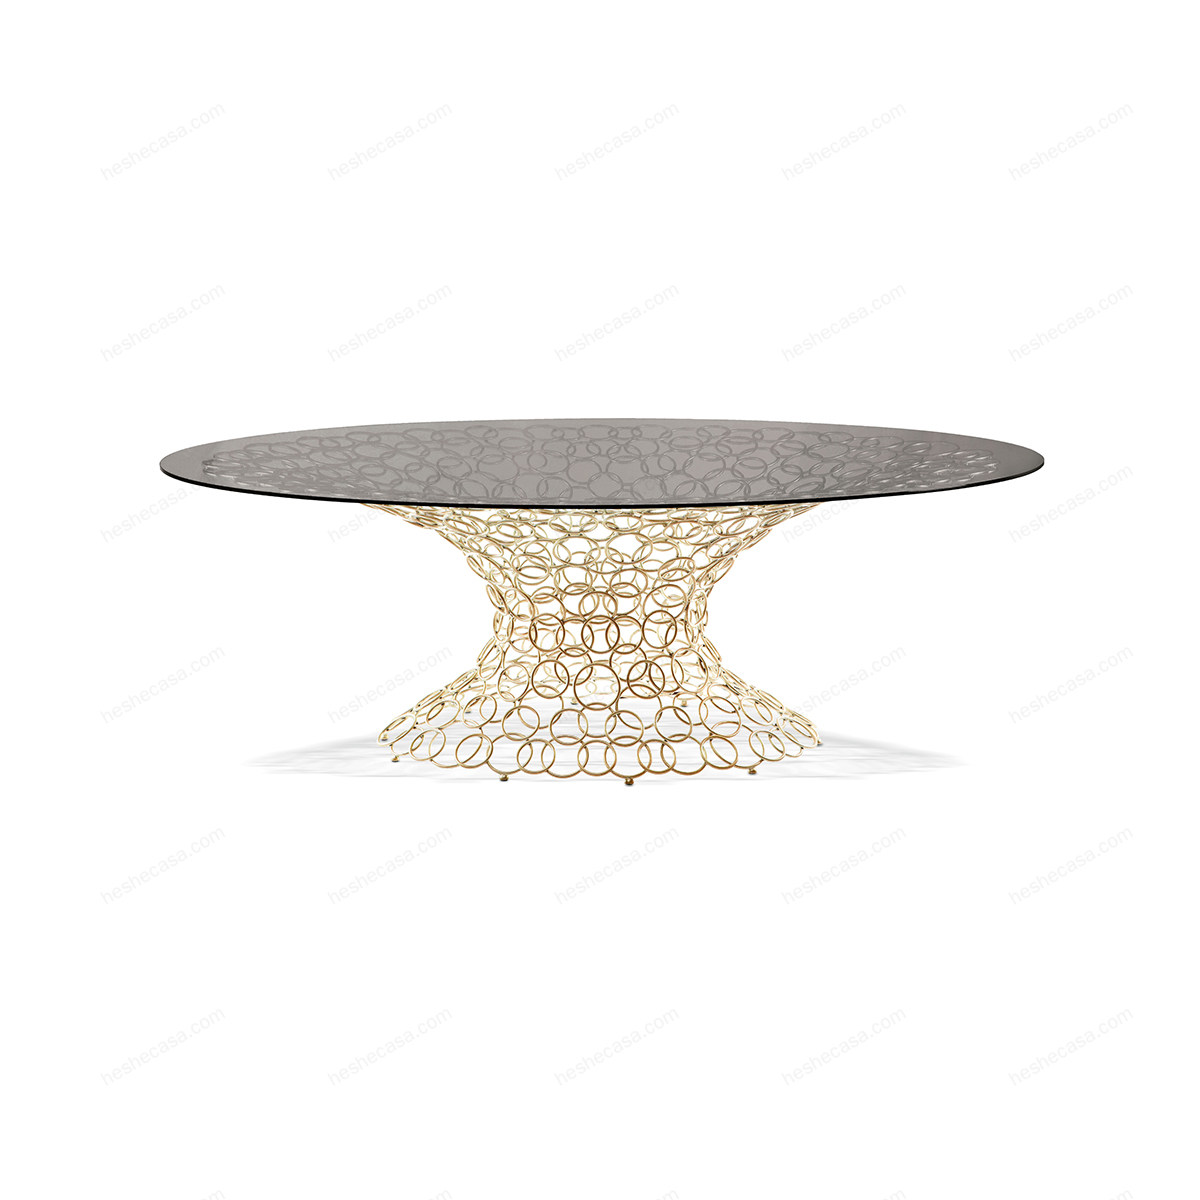 Mondrian-art-form餐桌